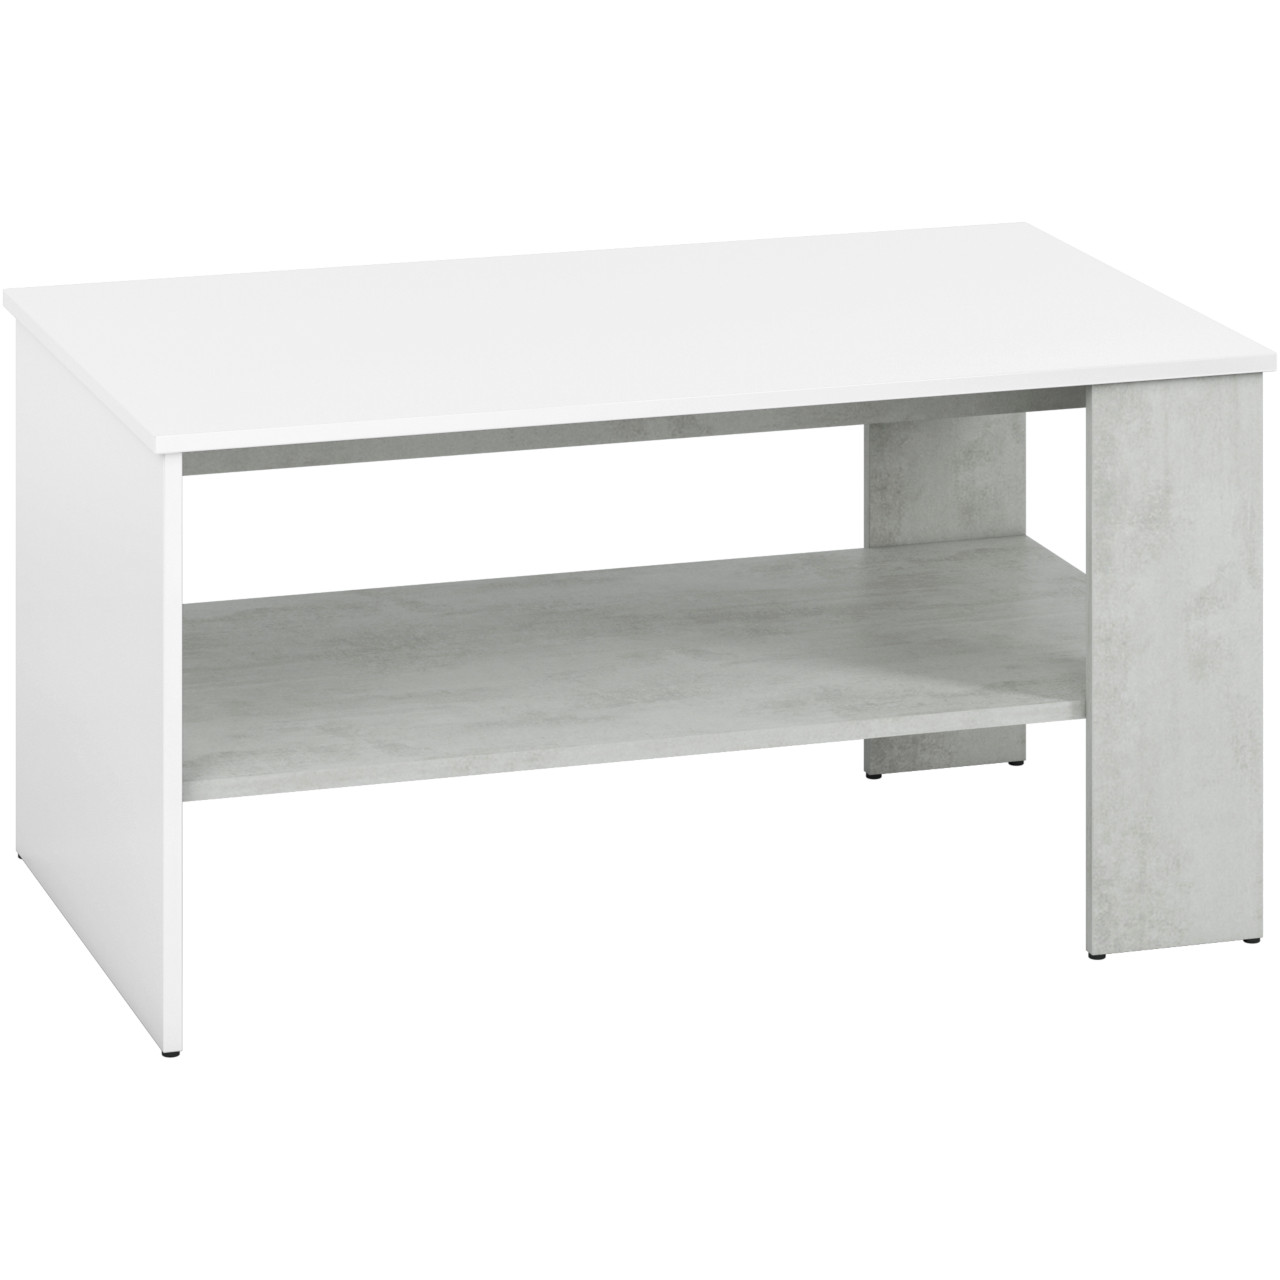 Coffee table LORA LA10 silver concrete / white gloss